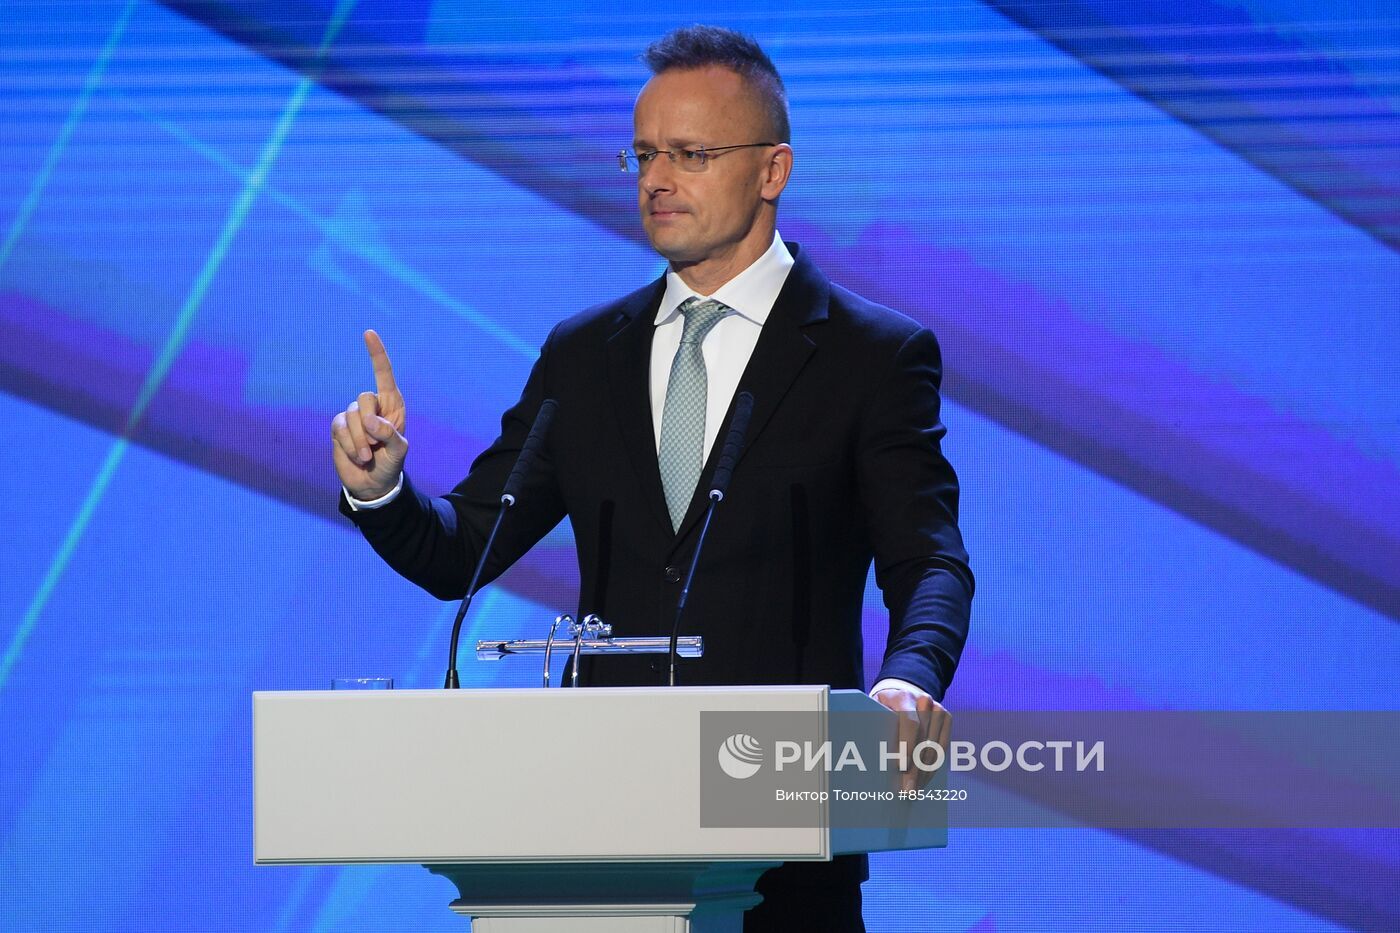 هنغاريا تعلن أنها لن تسمح بفرض الاتحاد الأوروبي عقوبات جديدة ضد روسيا